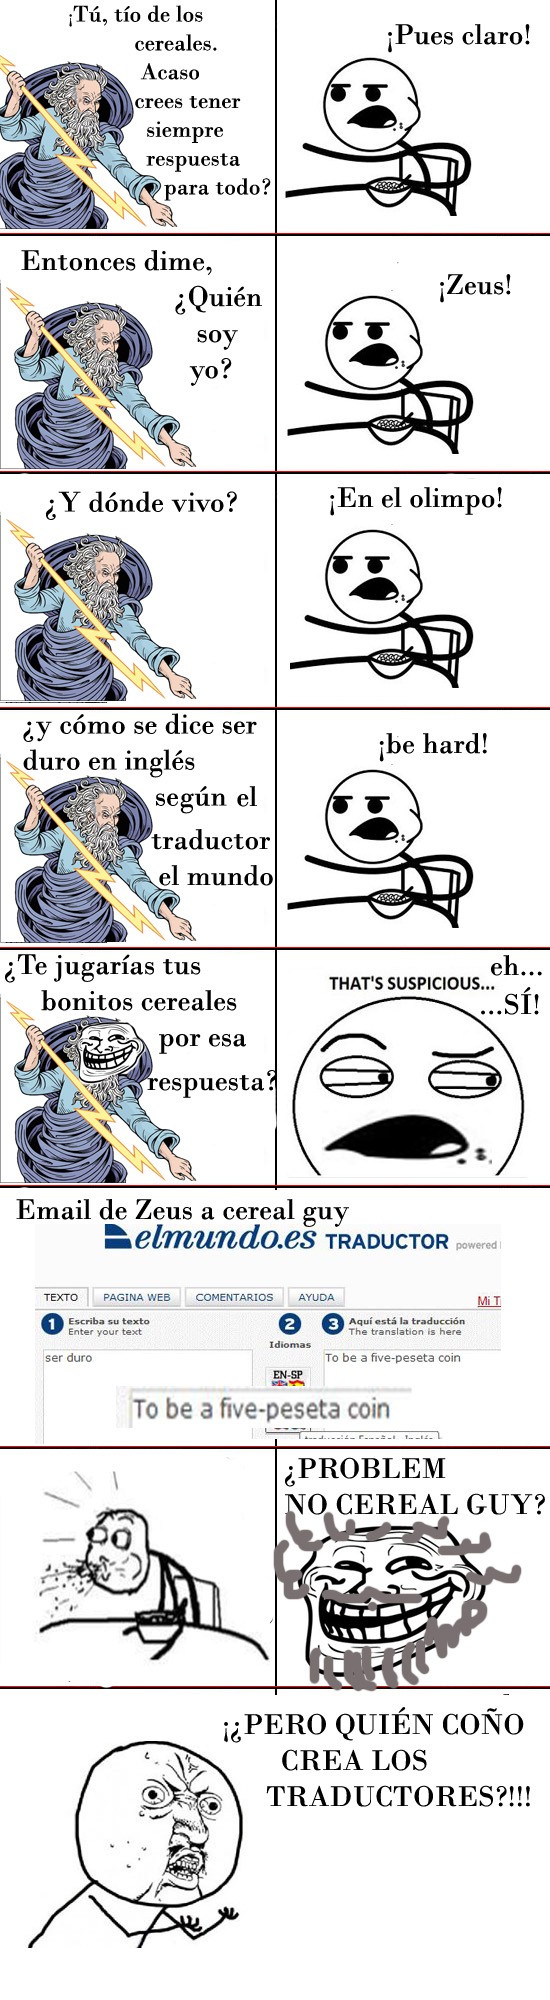 Cereal guy,traductor,VS,Zeus